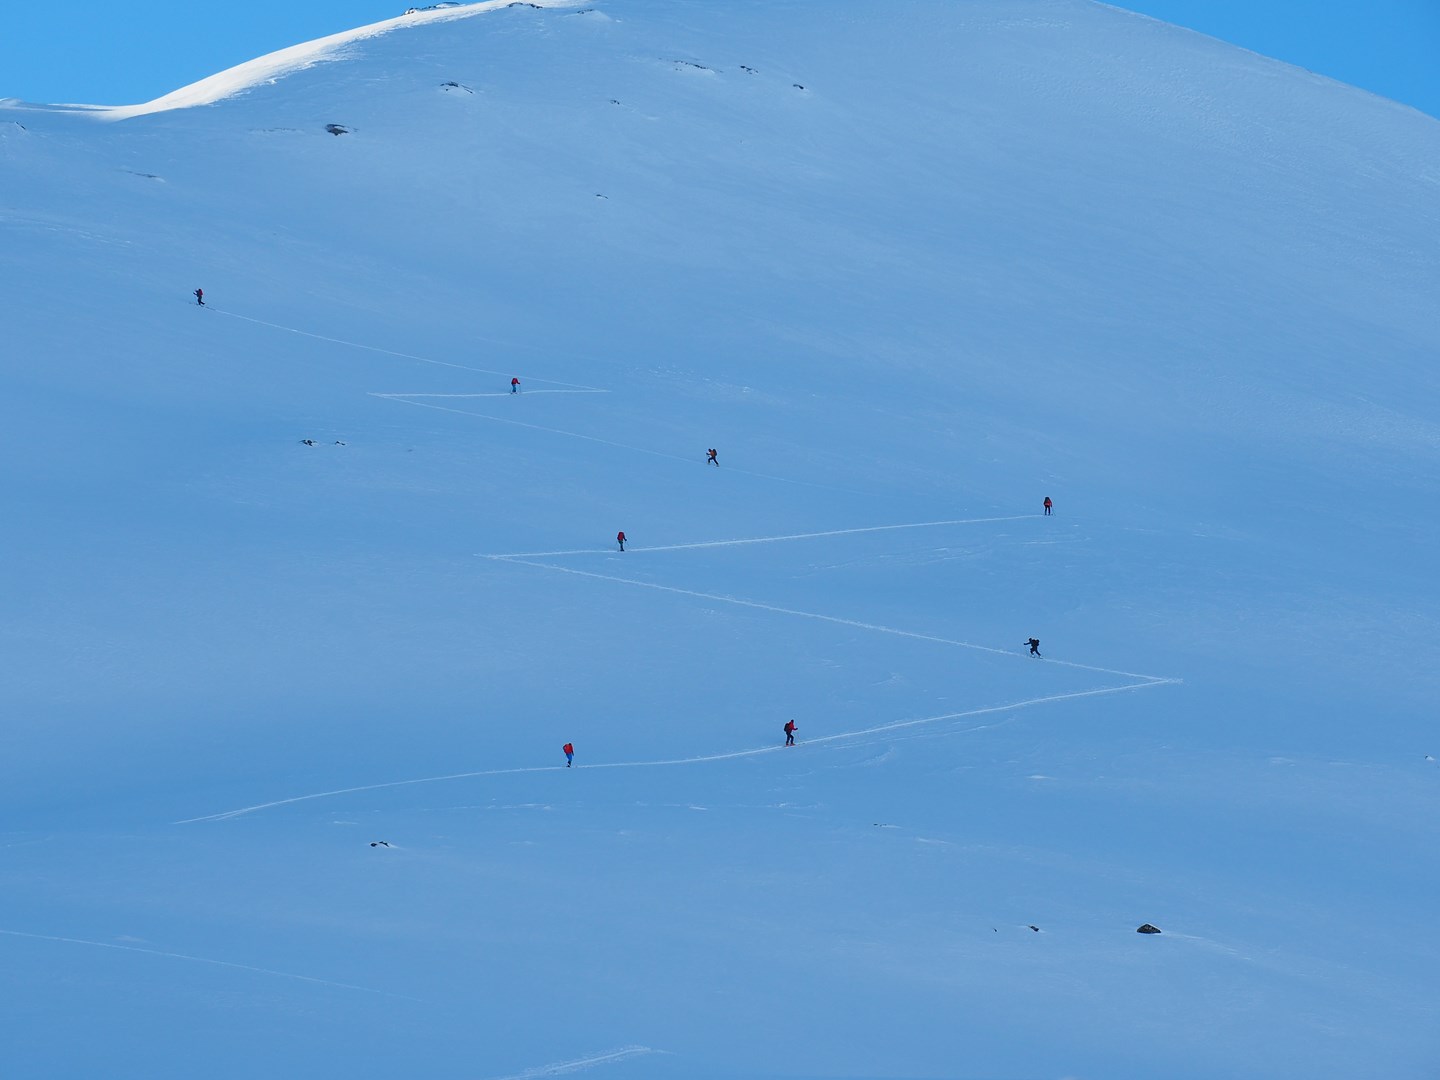 En gruppe skigåere beveger seg oppover en fjellside med god avlastningsavstand.